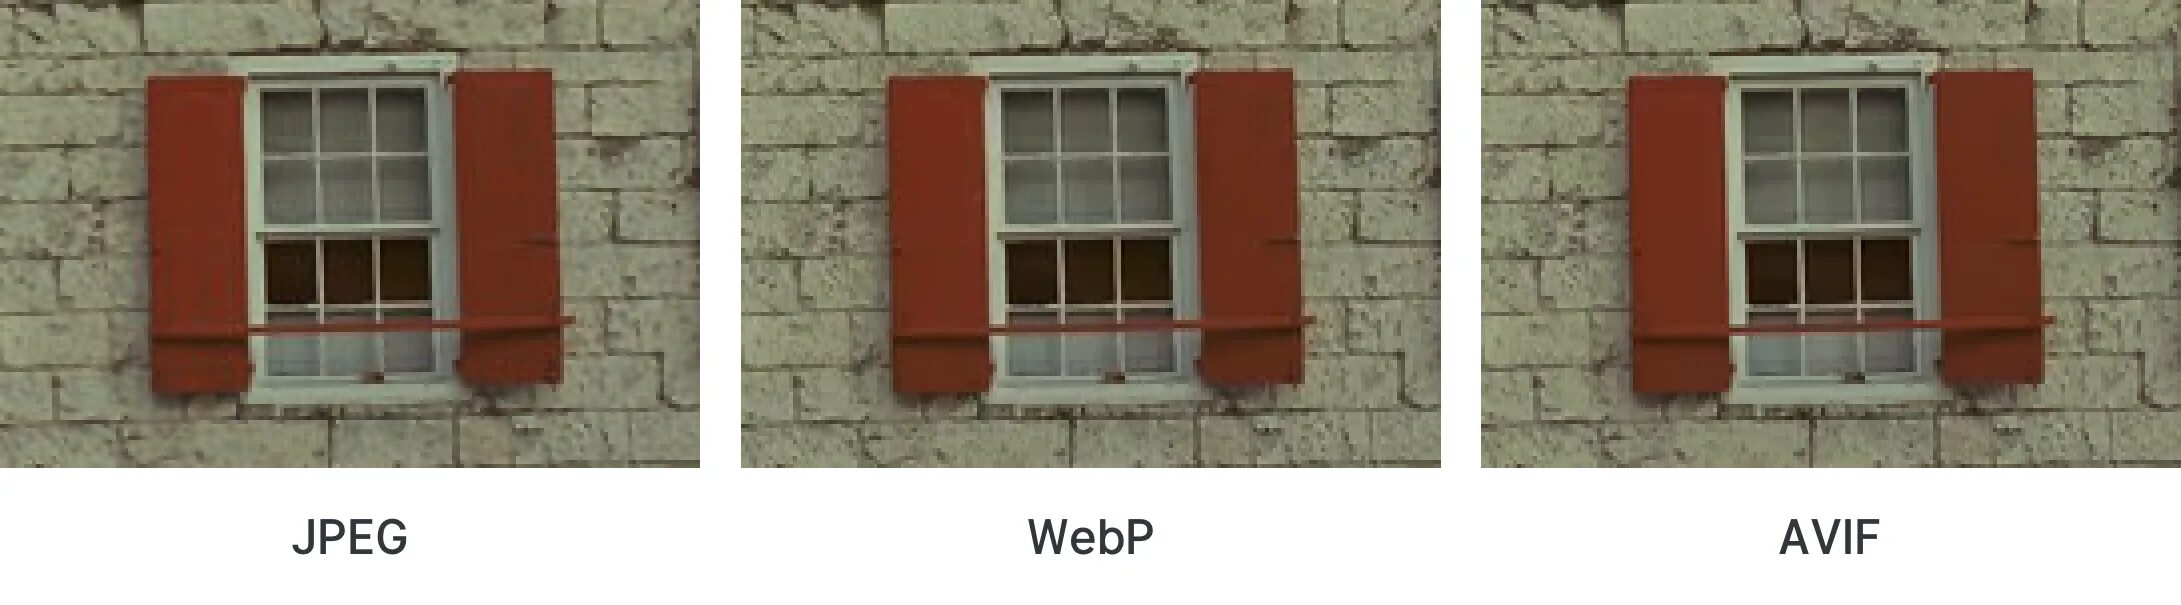 Webp мемы. Webp изображения. Webp vs jpeg. Webp в jpeg.